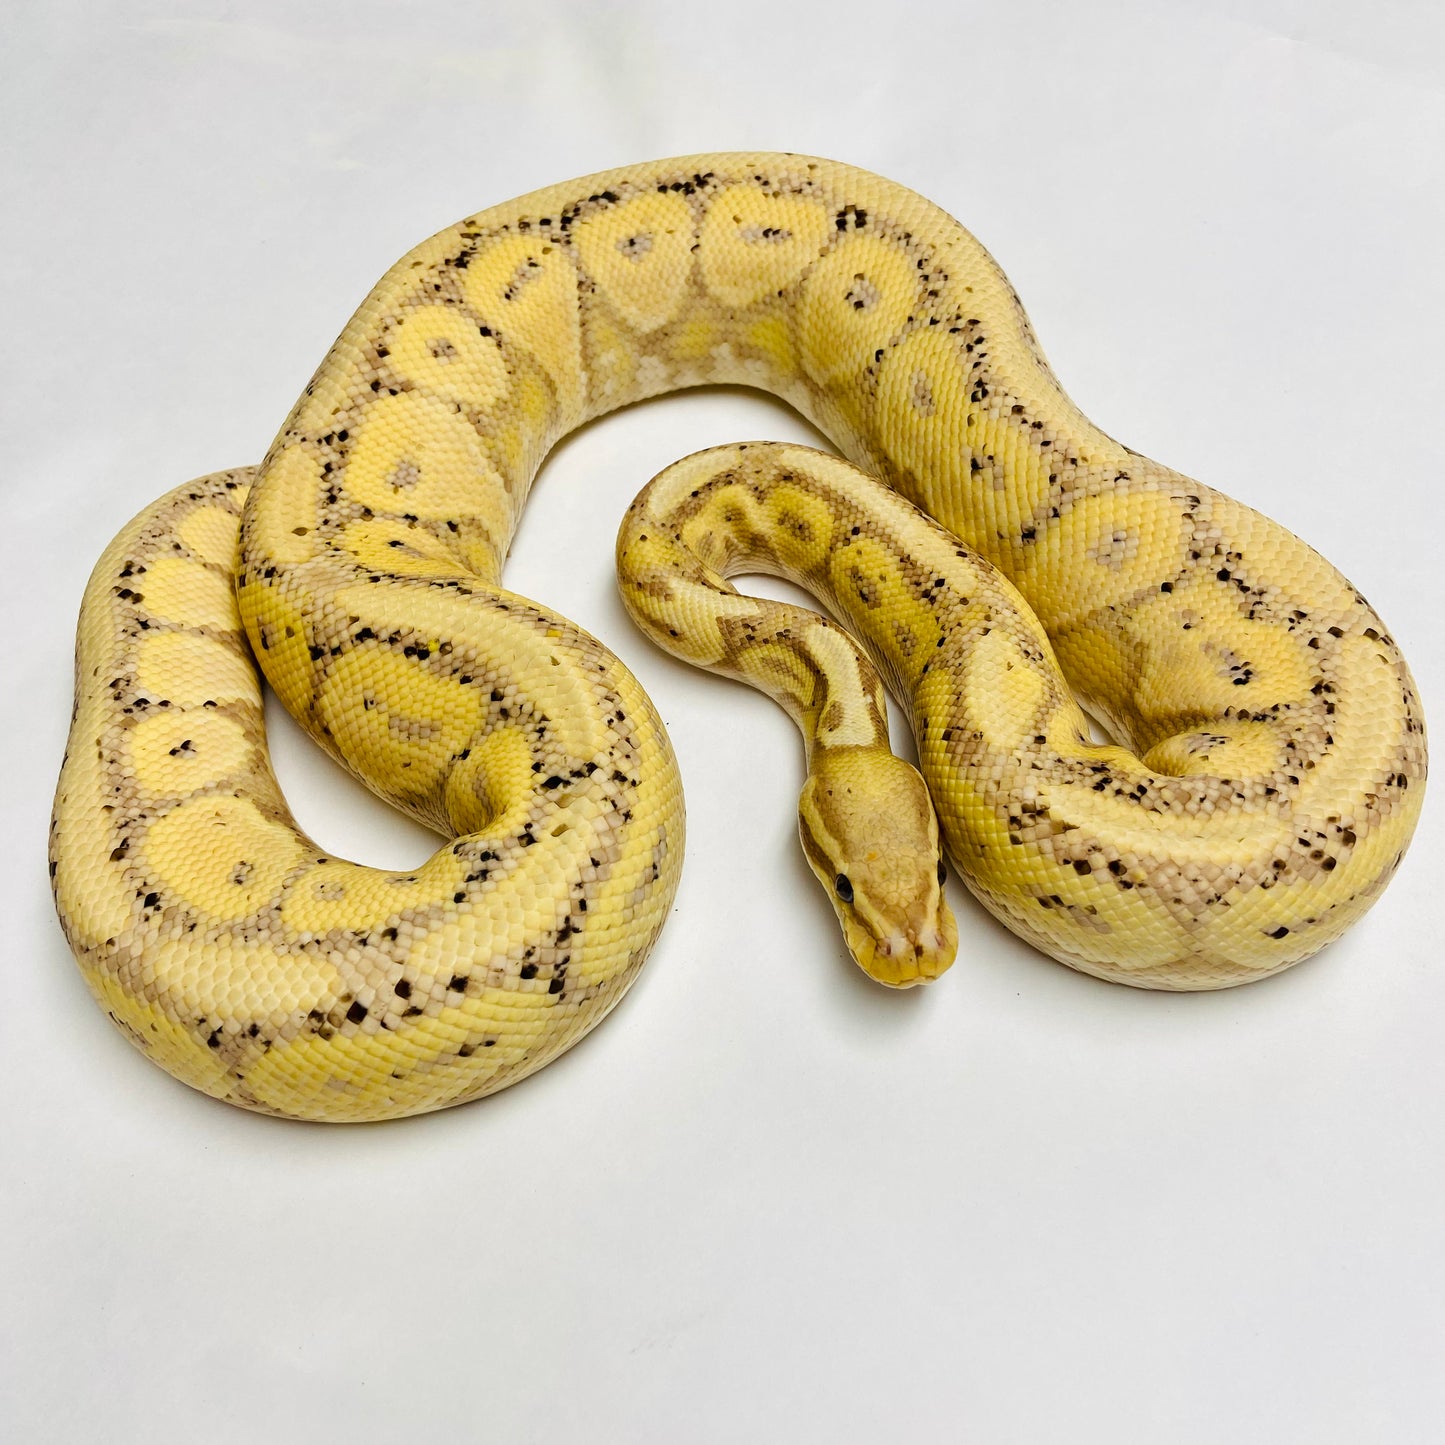 Adult Banana Lori Ball Python- Male